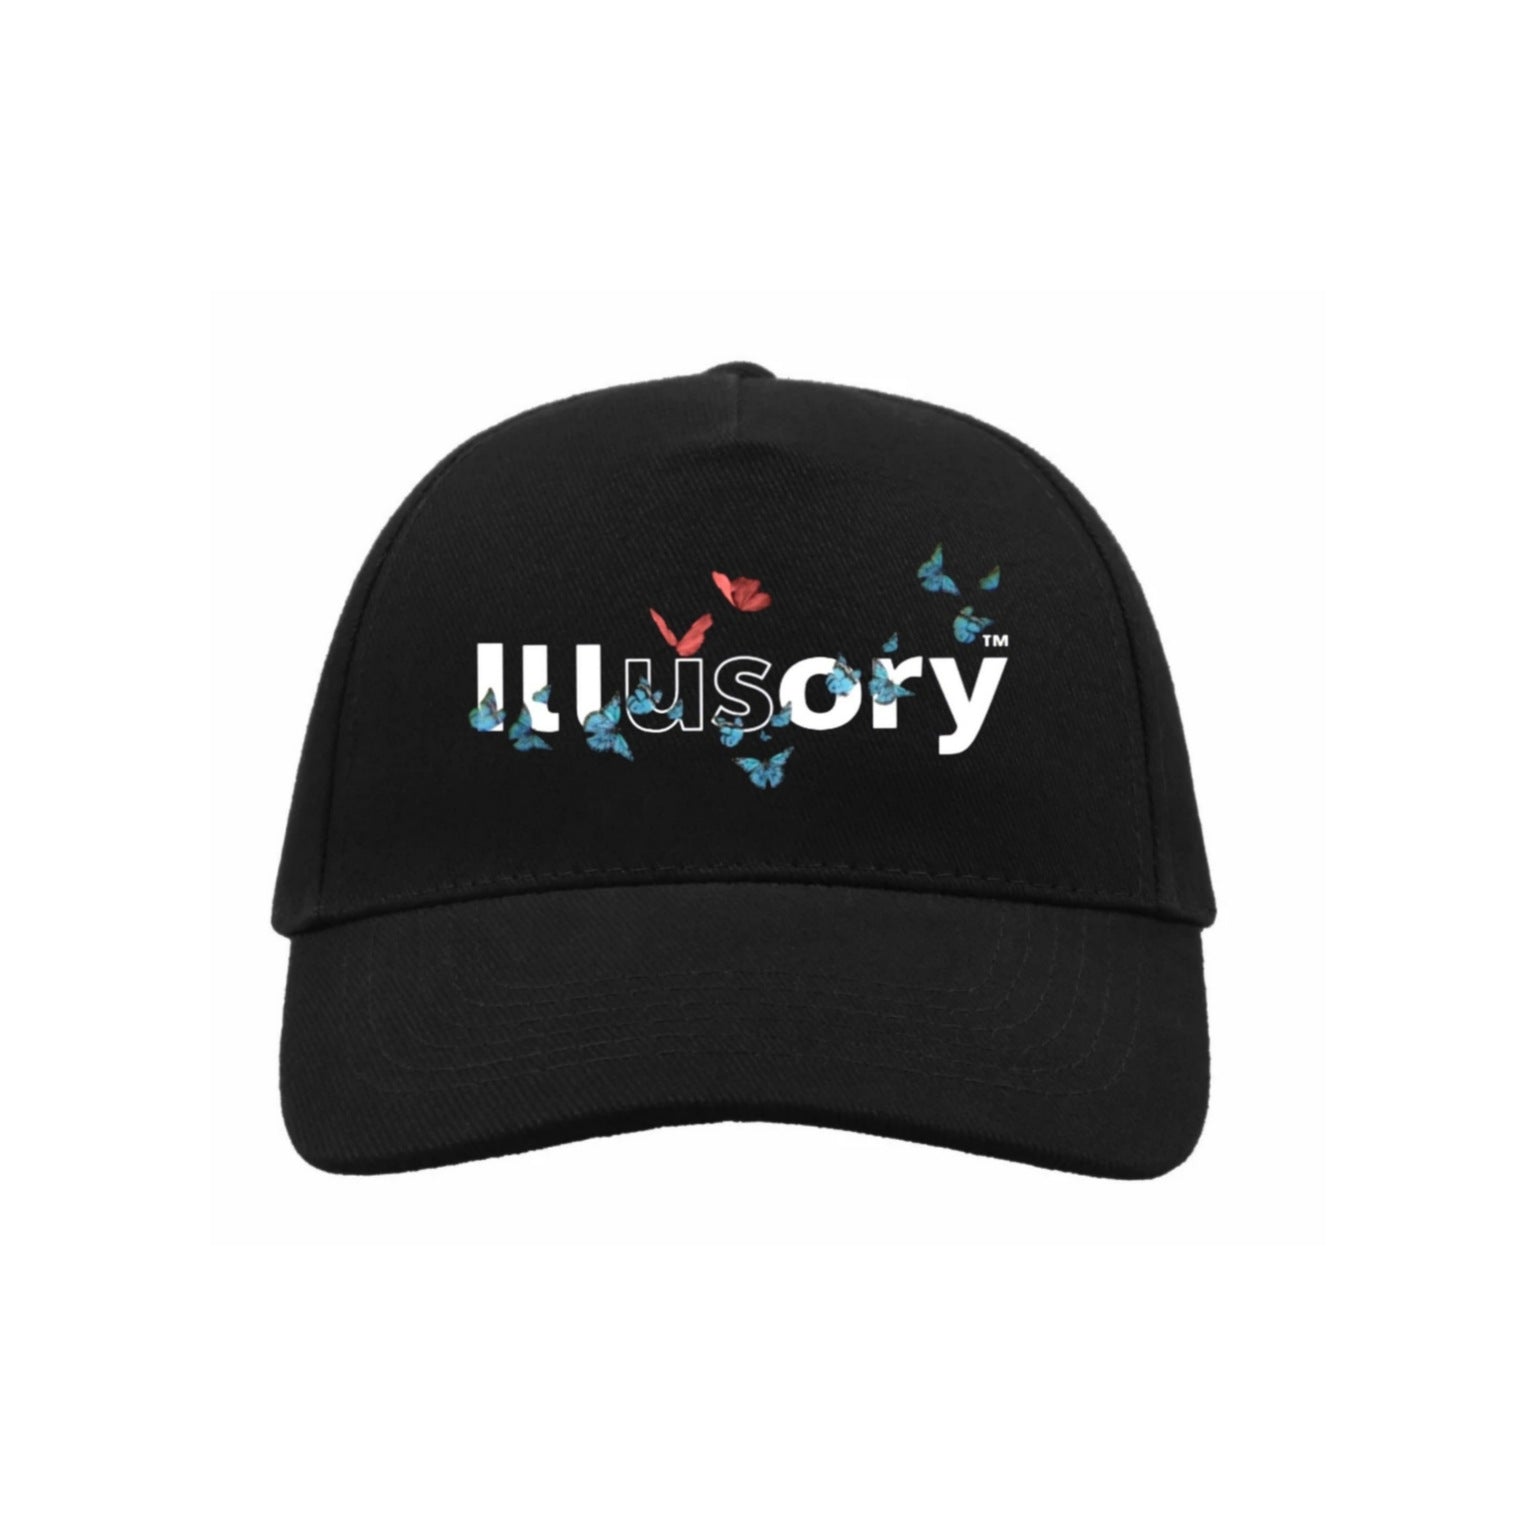 ILLUSORY "US" HAT